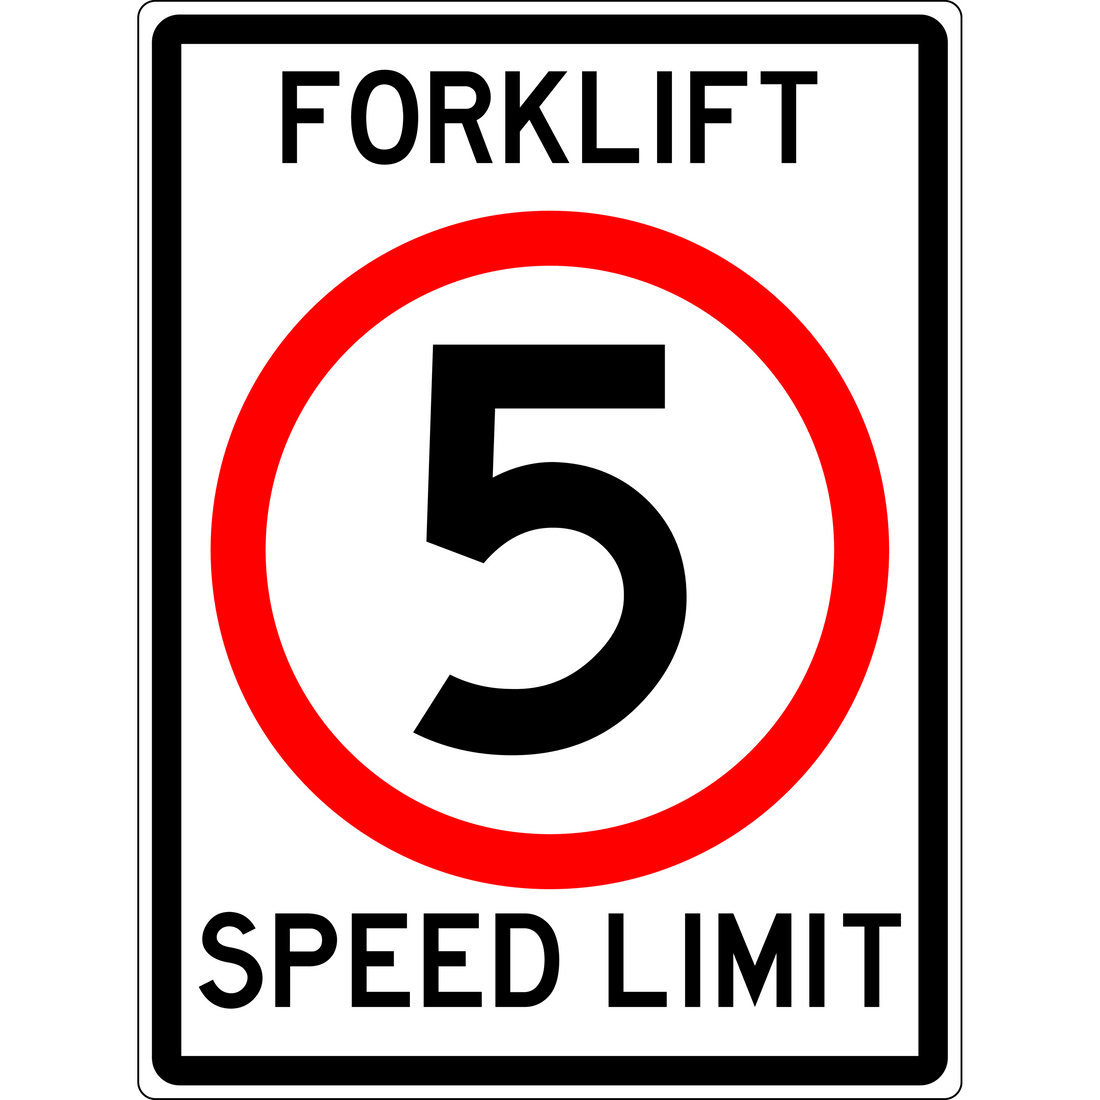 CARPARK-FORKLIFT-SPEED-LIMIT-5